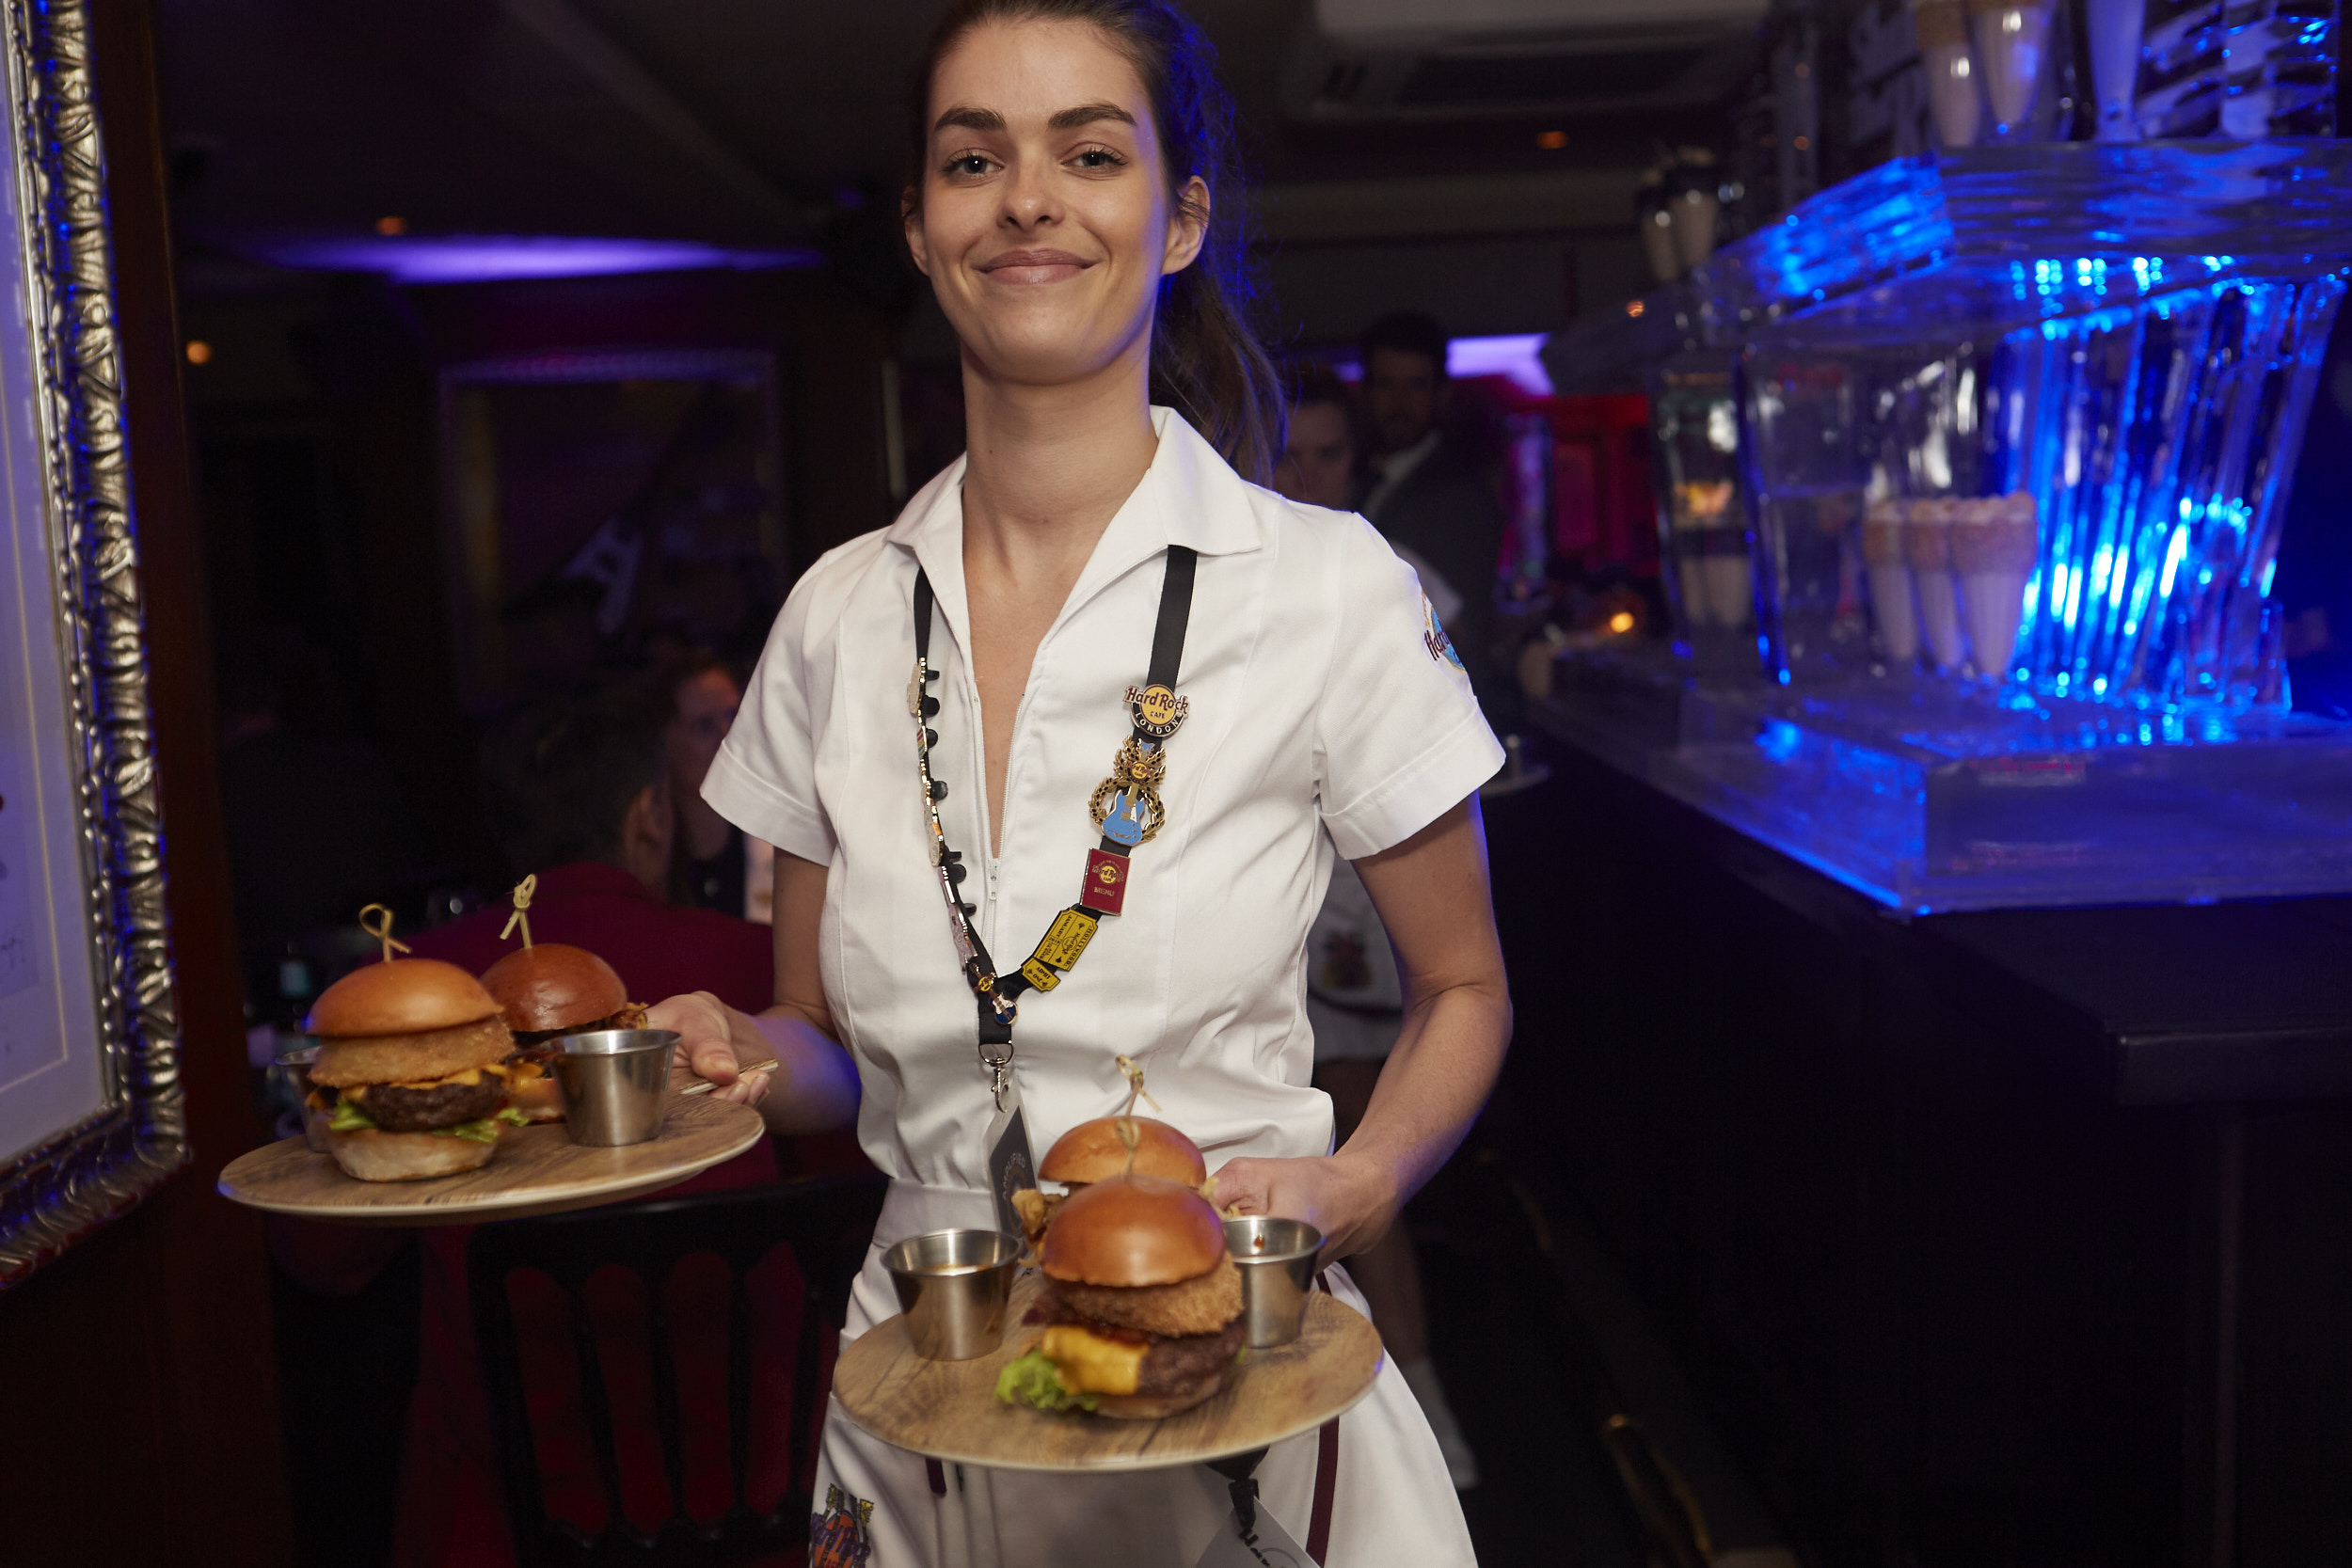 A Hard Rock Cafe waitress serves up the award-winning new steak burgers.